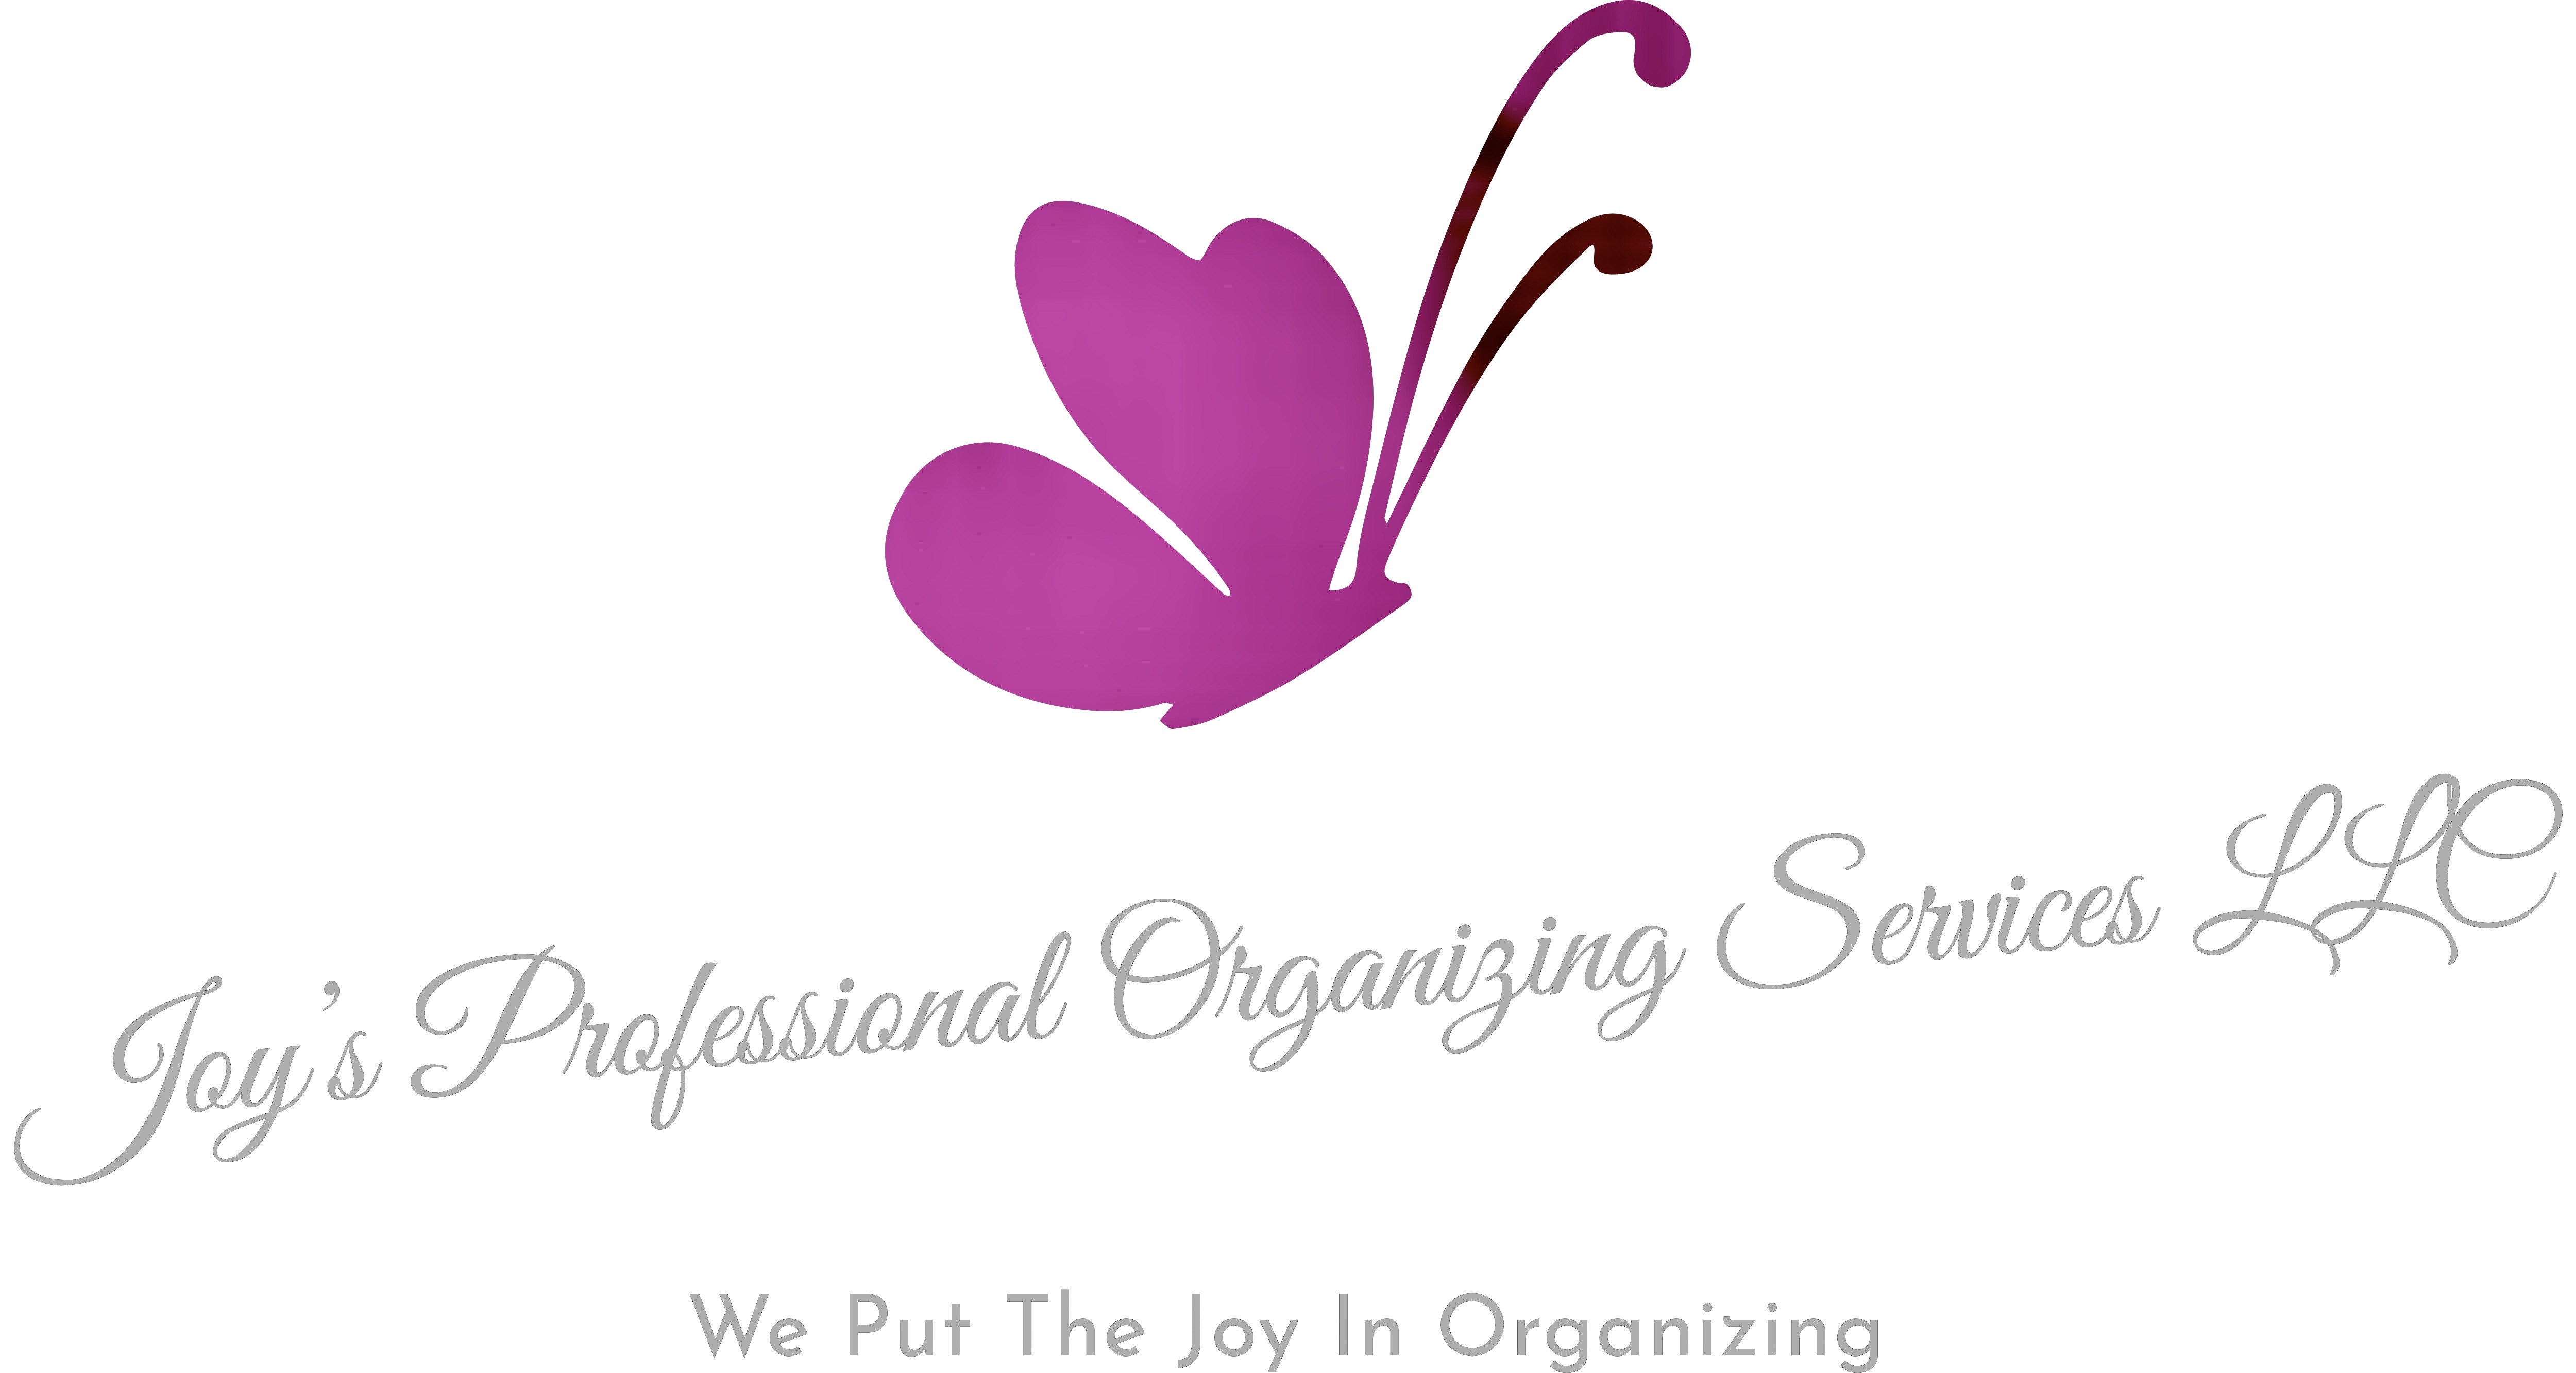 Joys Professional Organizing Services Logo